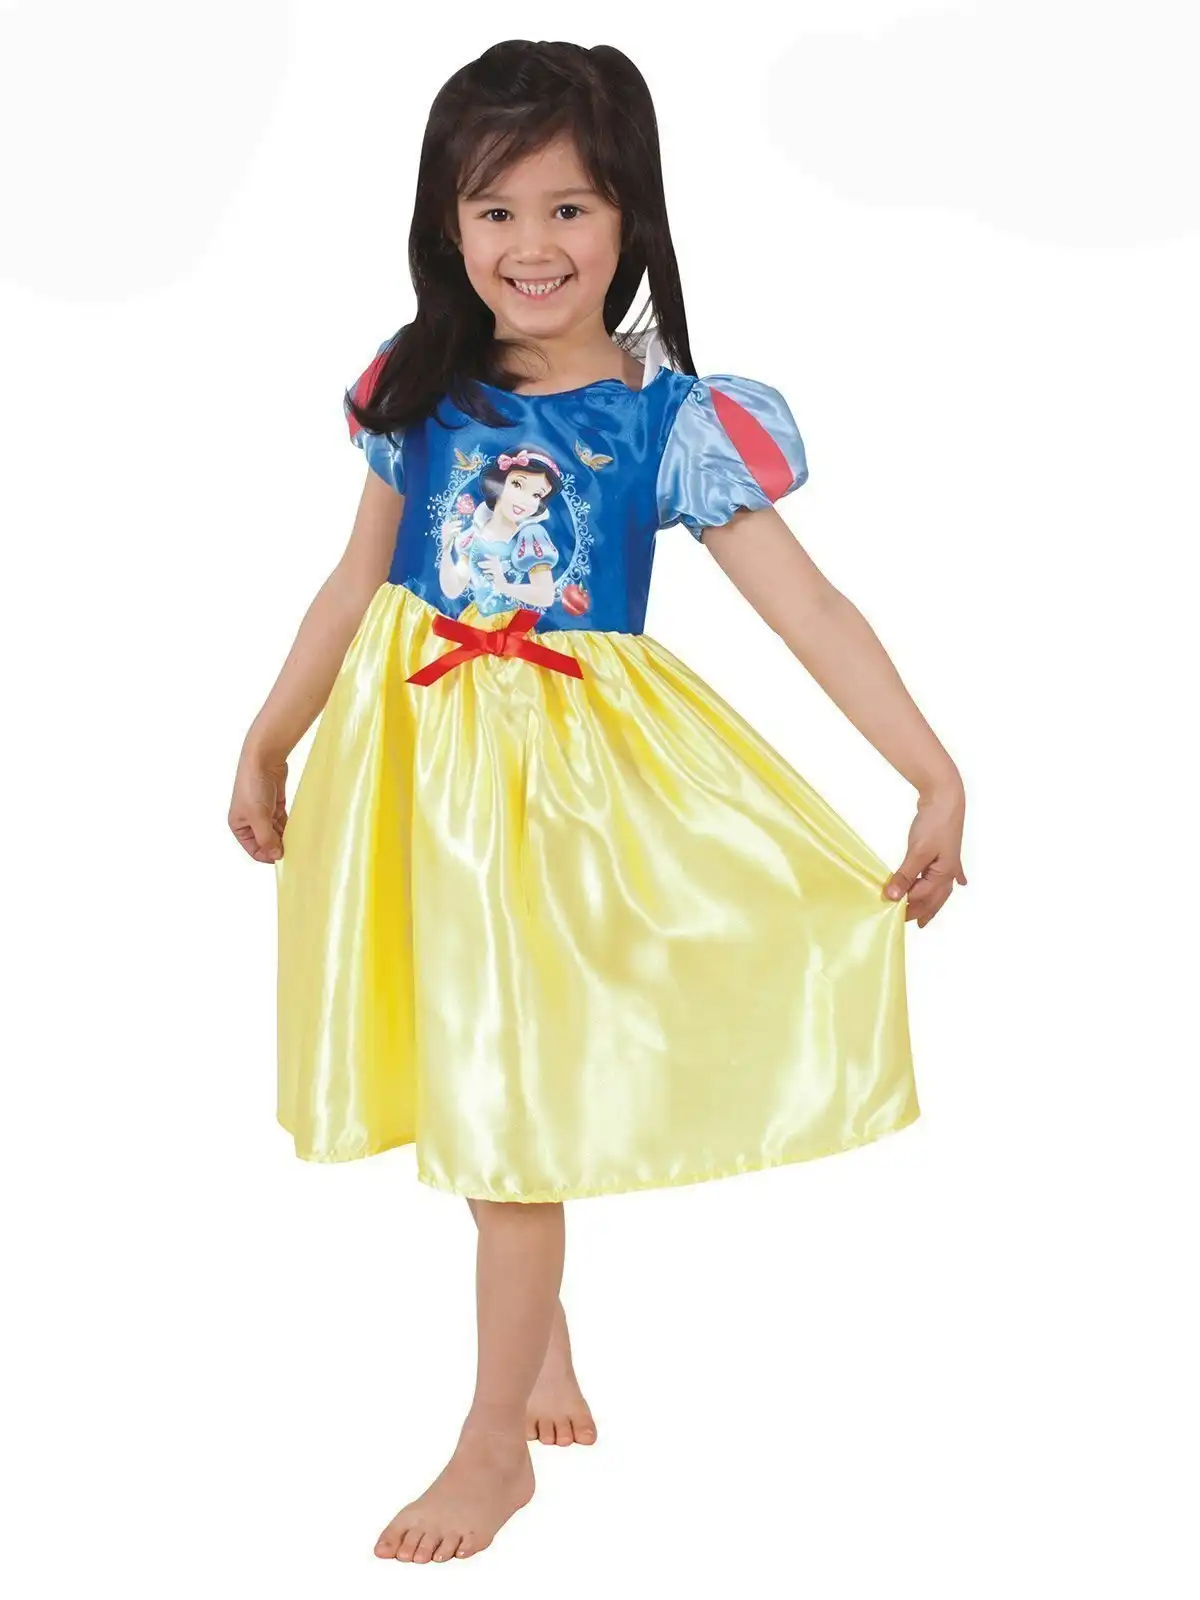 Disney Snow White Opp Storytime Dress Up Kids/Children/Girls Costume Size 2-4